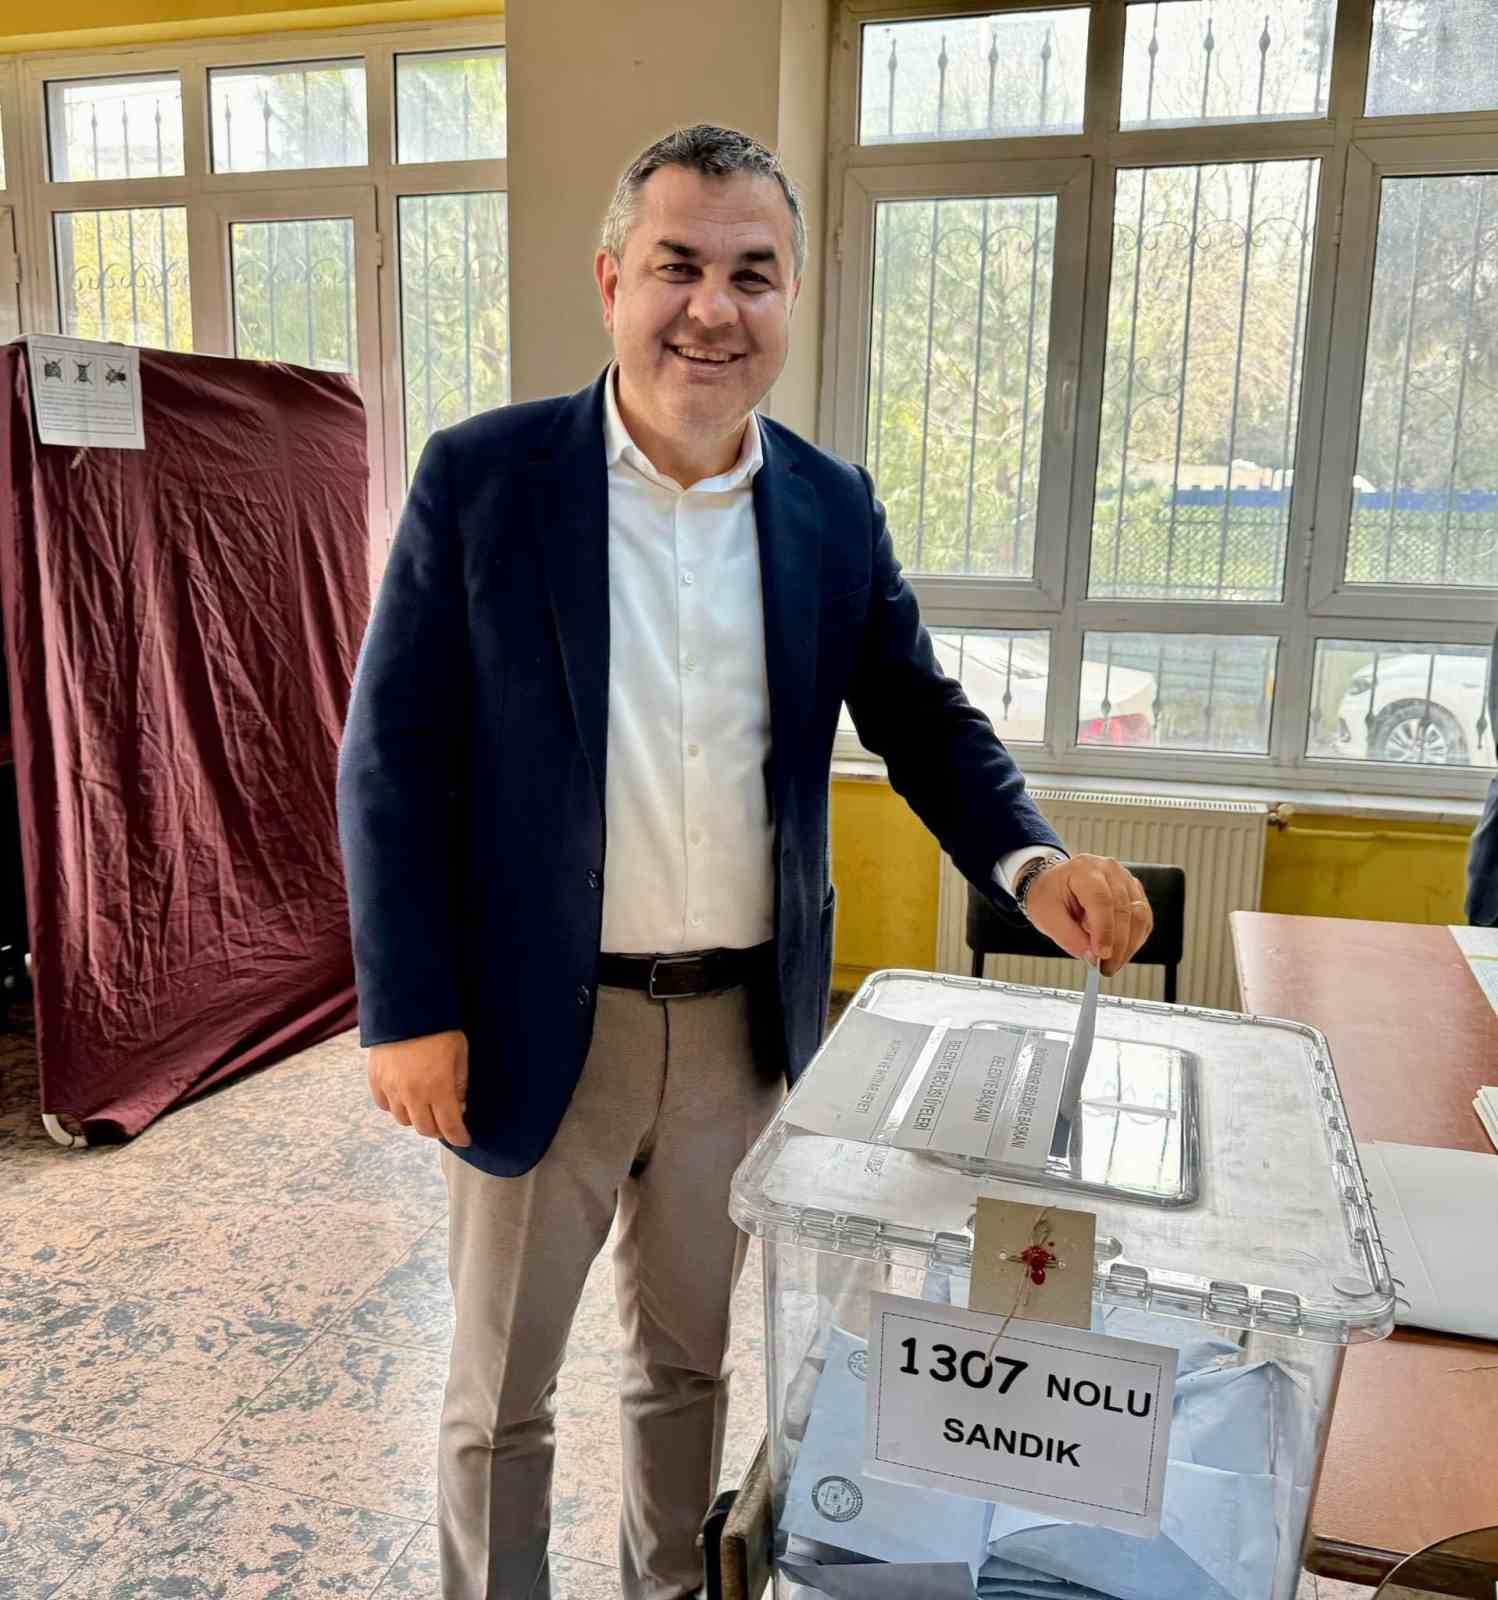 İzmir’de ilginç seçim: Kayınbirader enişteye fark attı
